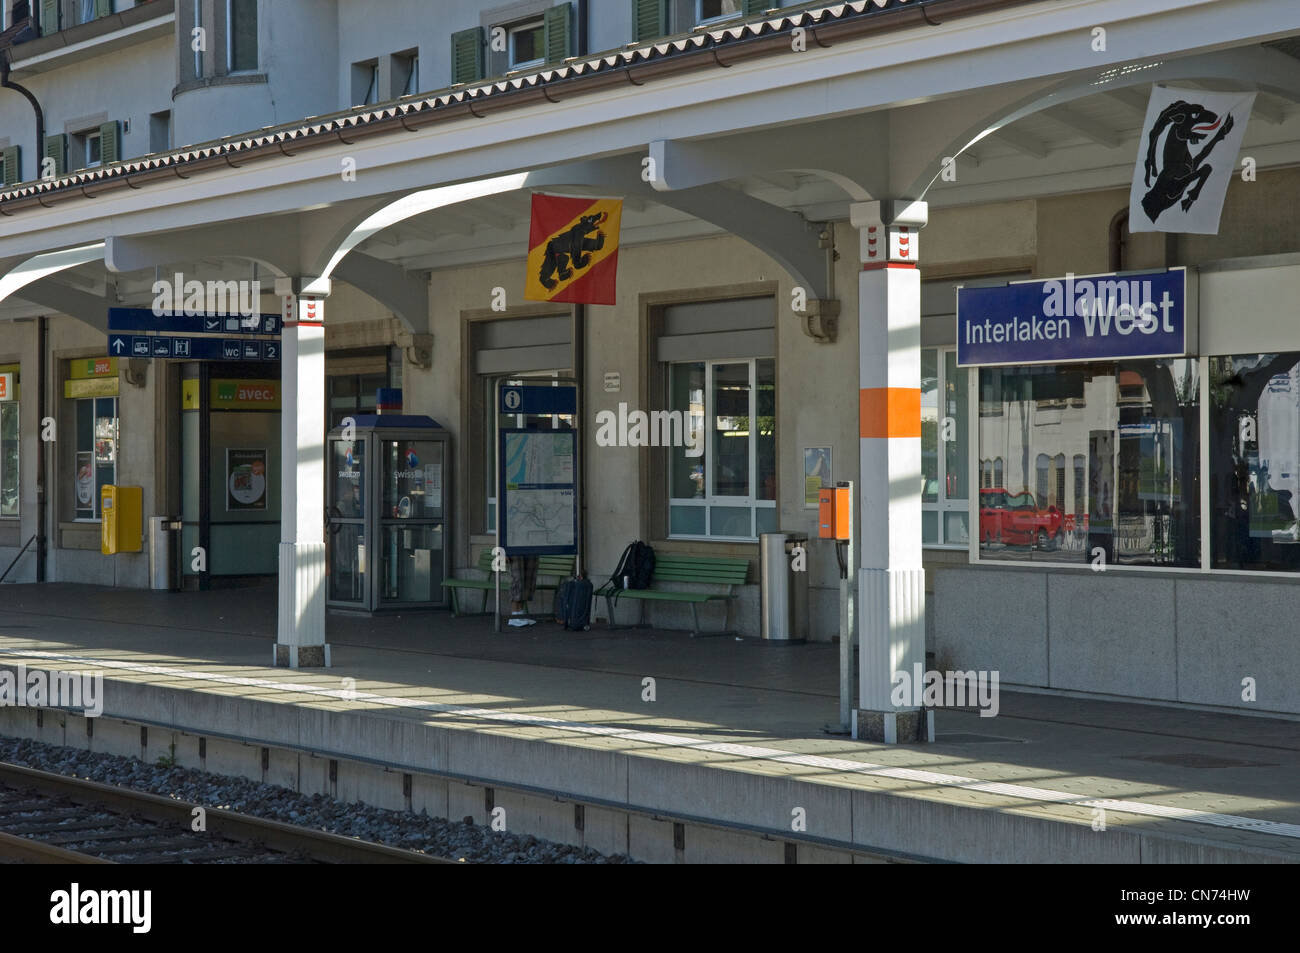 Bahnhof Interlaken West im Kanton Bern in der Schweiz Stockfotografie -  Alamy